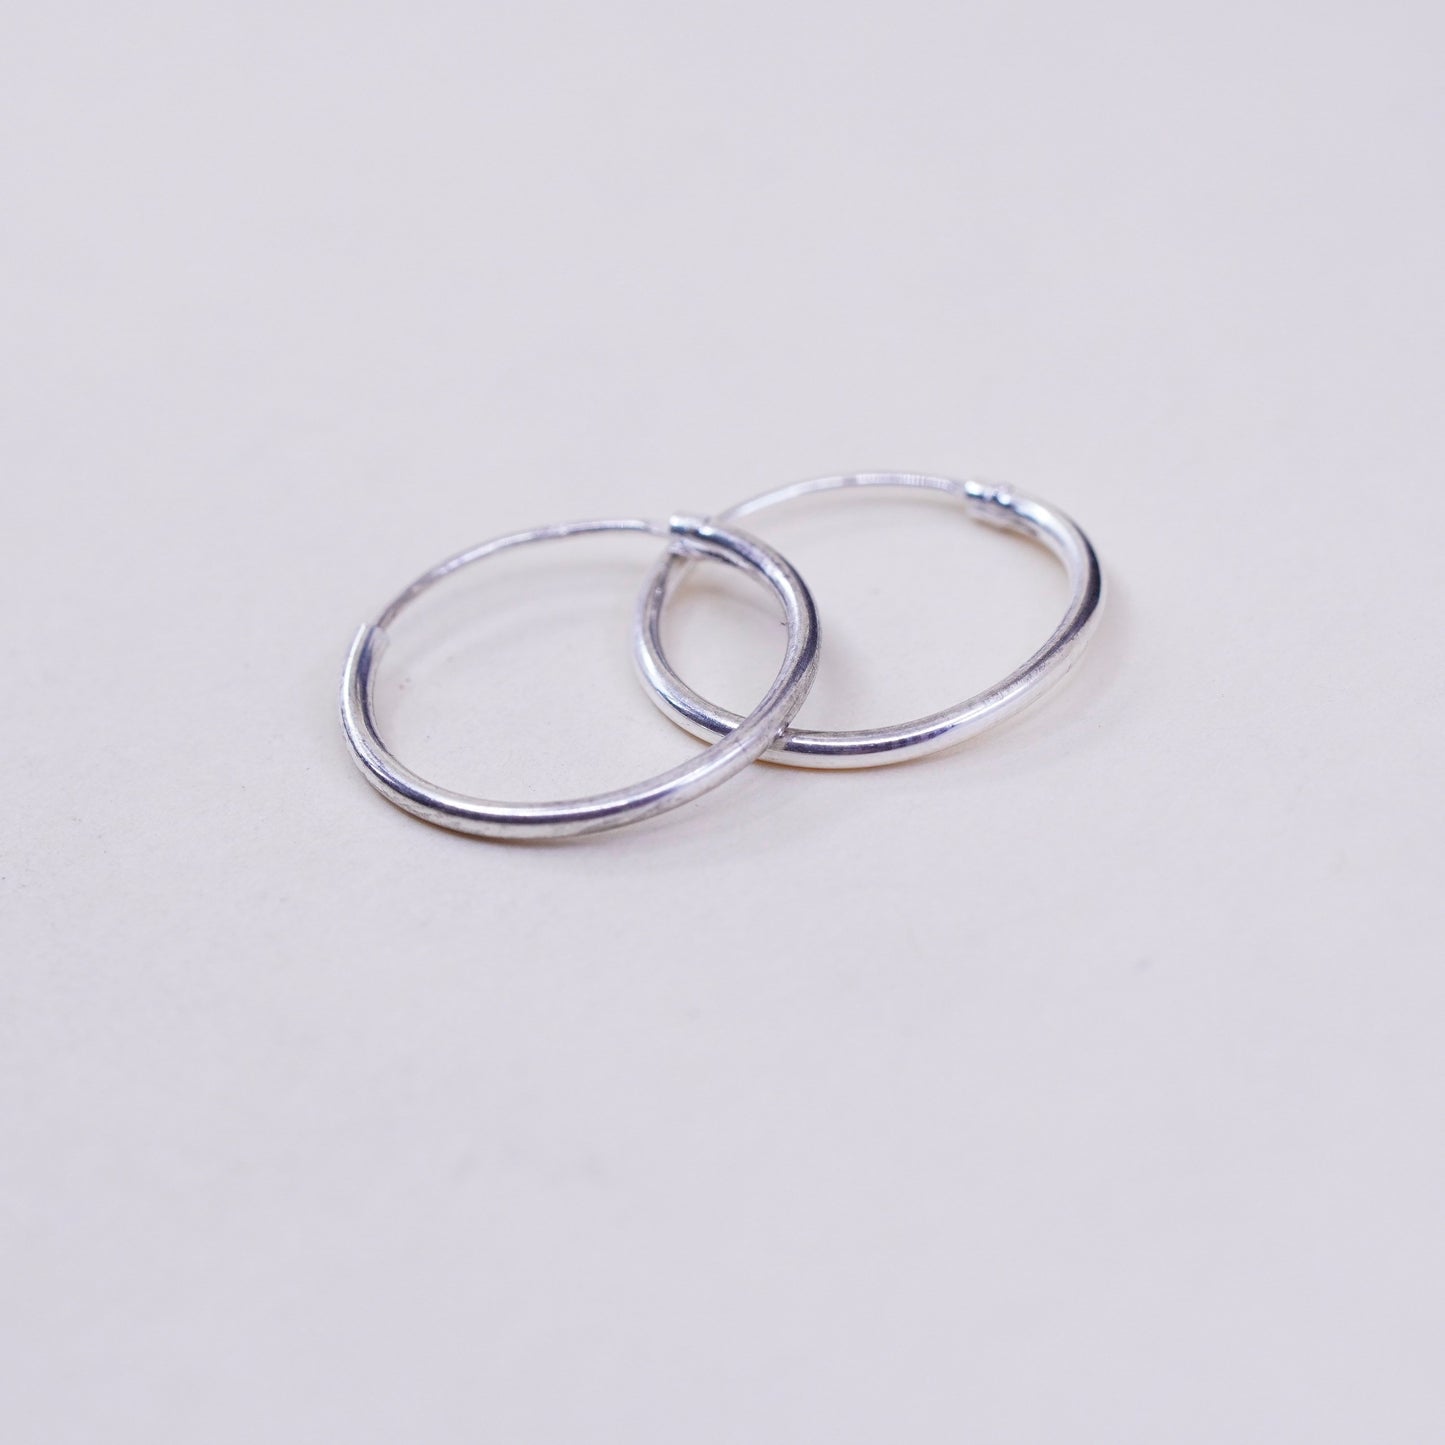 0.5”, sterling silver loop earrings, minimalist, textured 925 hoops, huggie